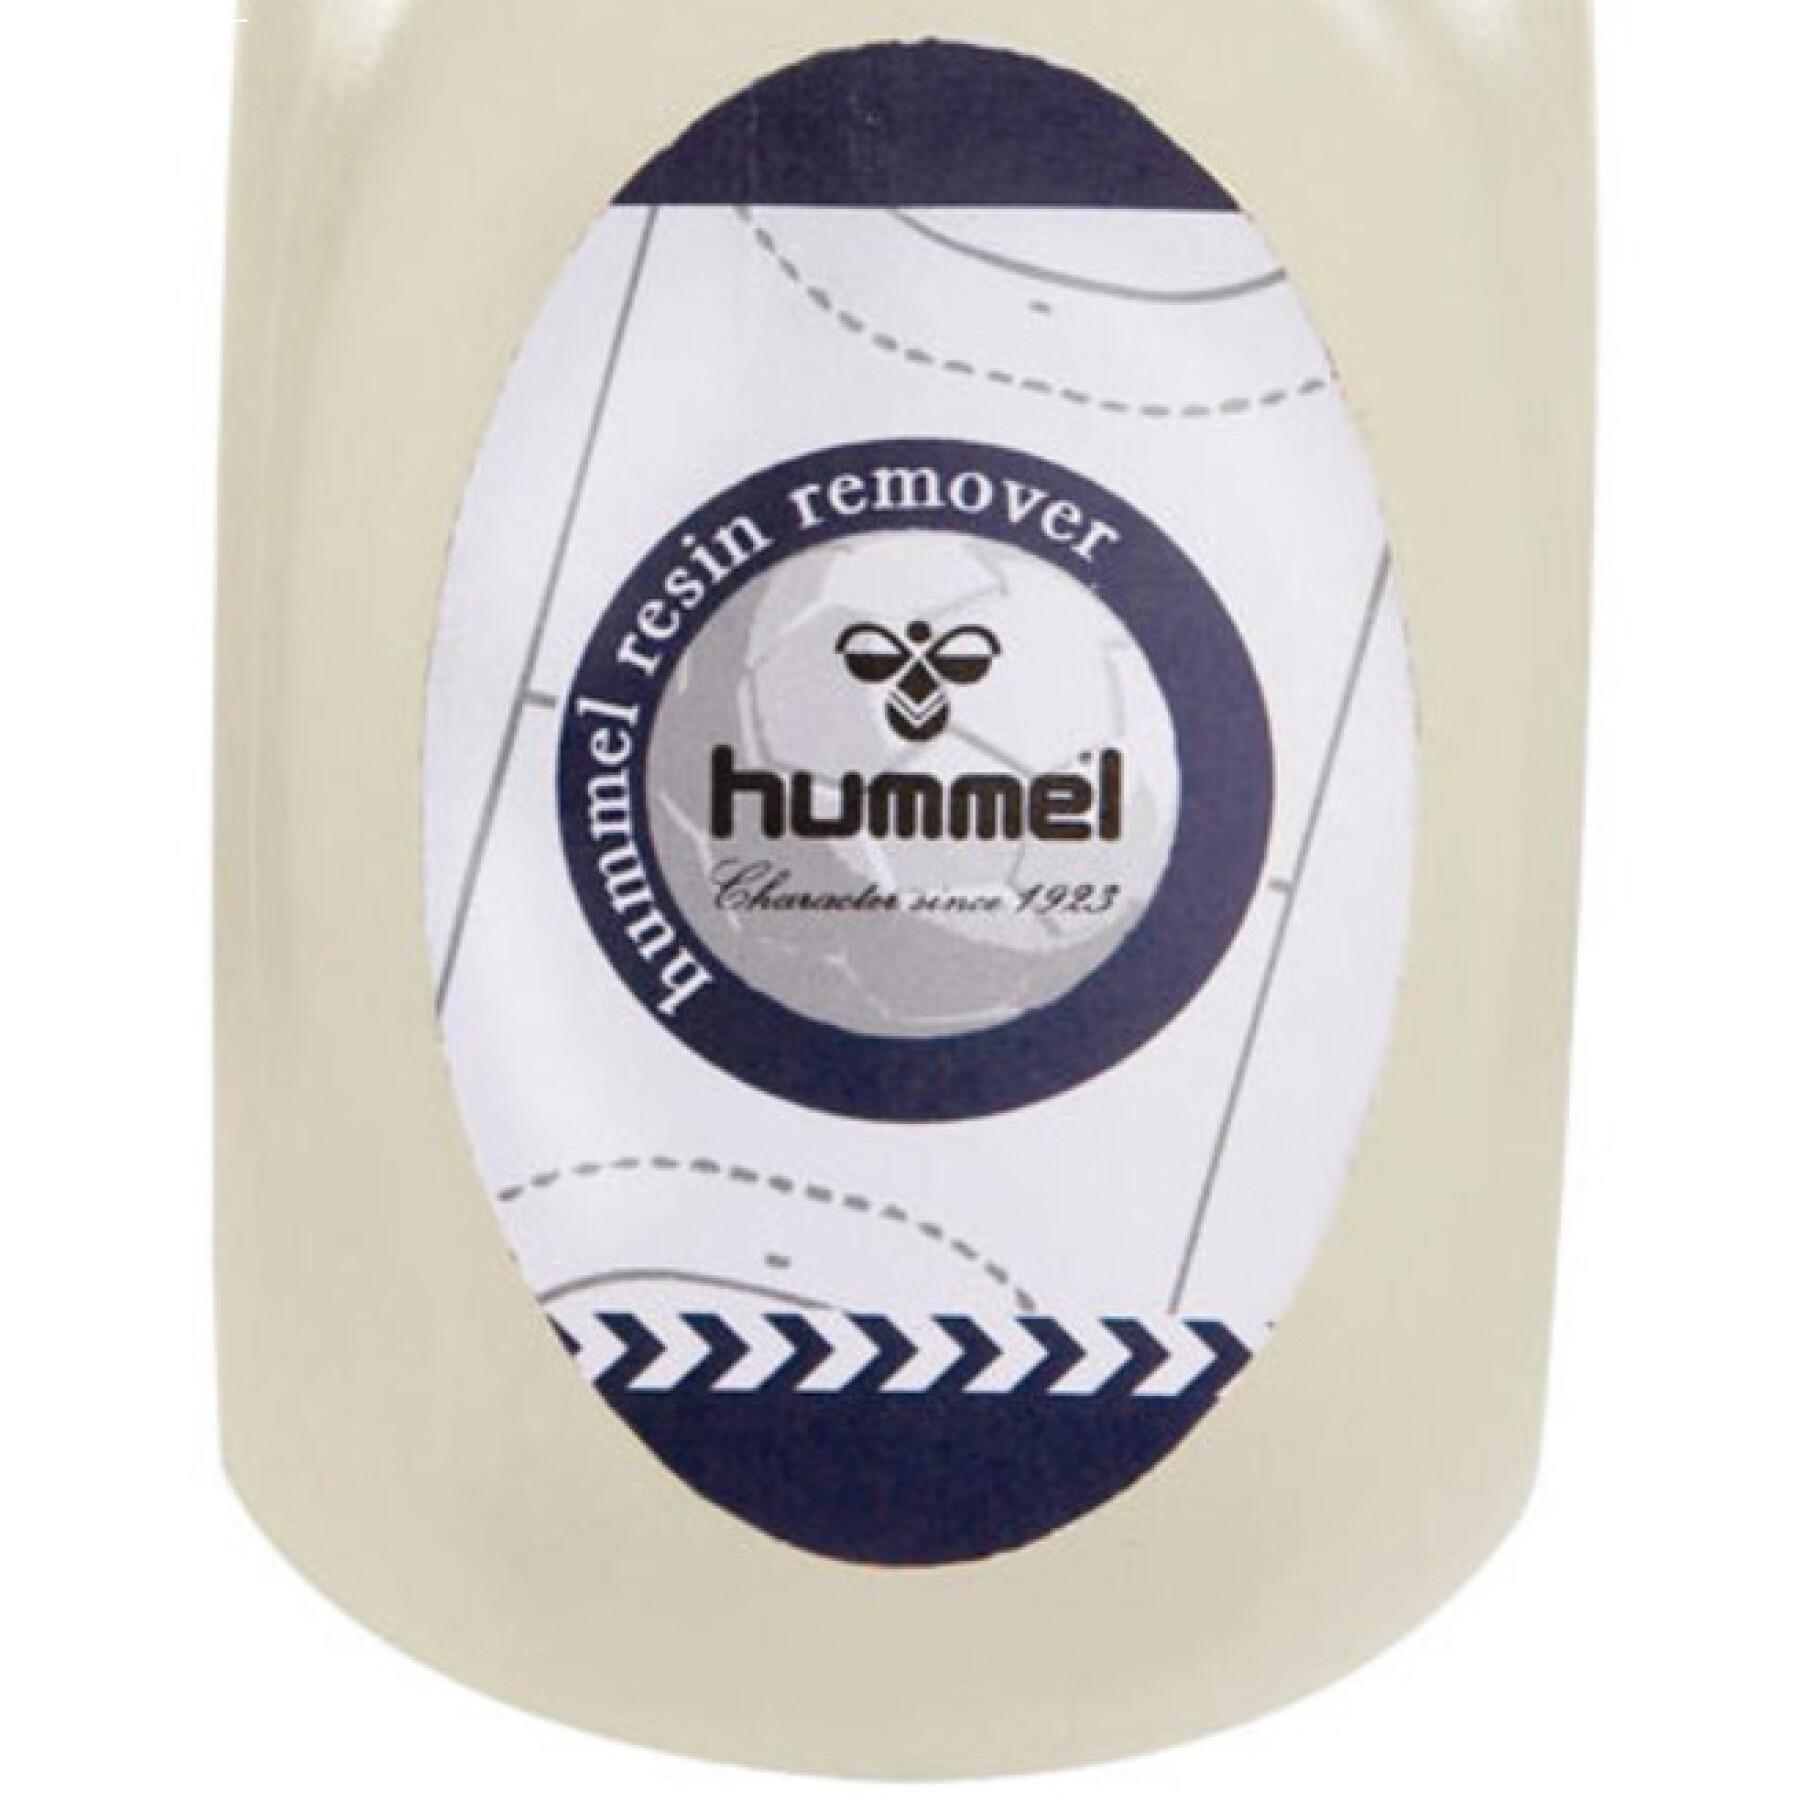 Resin cleaner jar Hummel